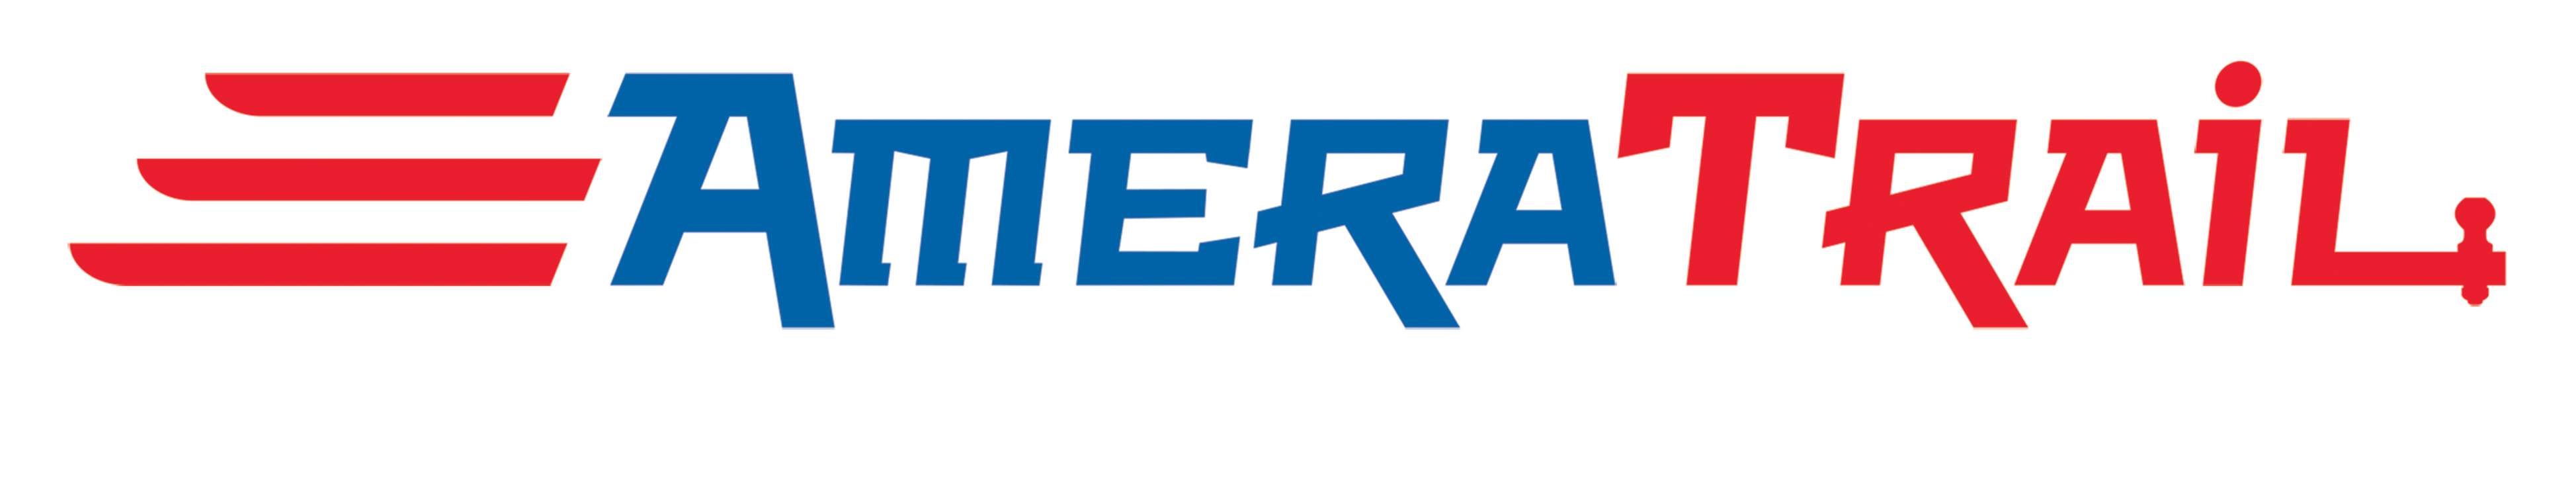 Amera Trail Logo PARTS ACCESSORIES ETC  White Outline 7 3895x745 ?v=1613584249